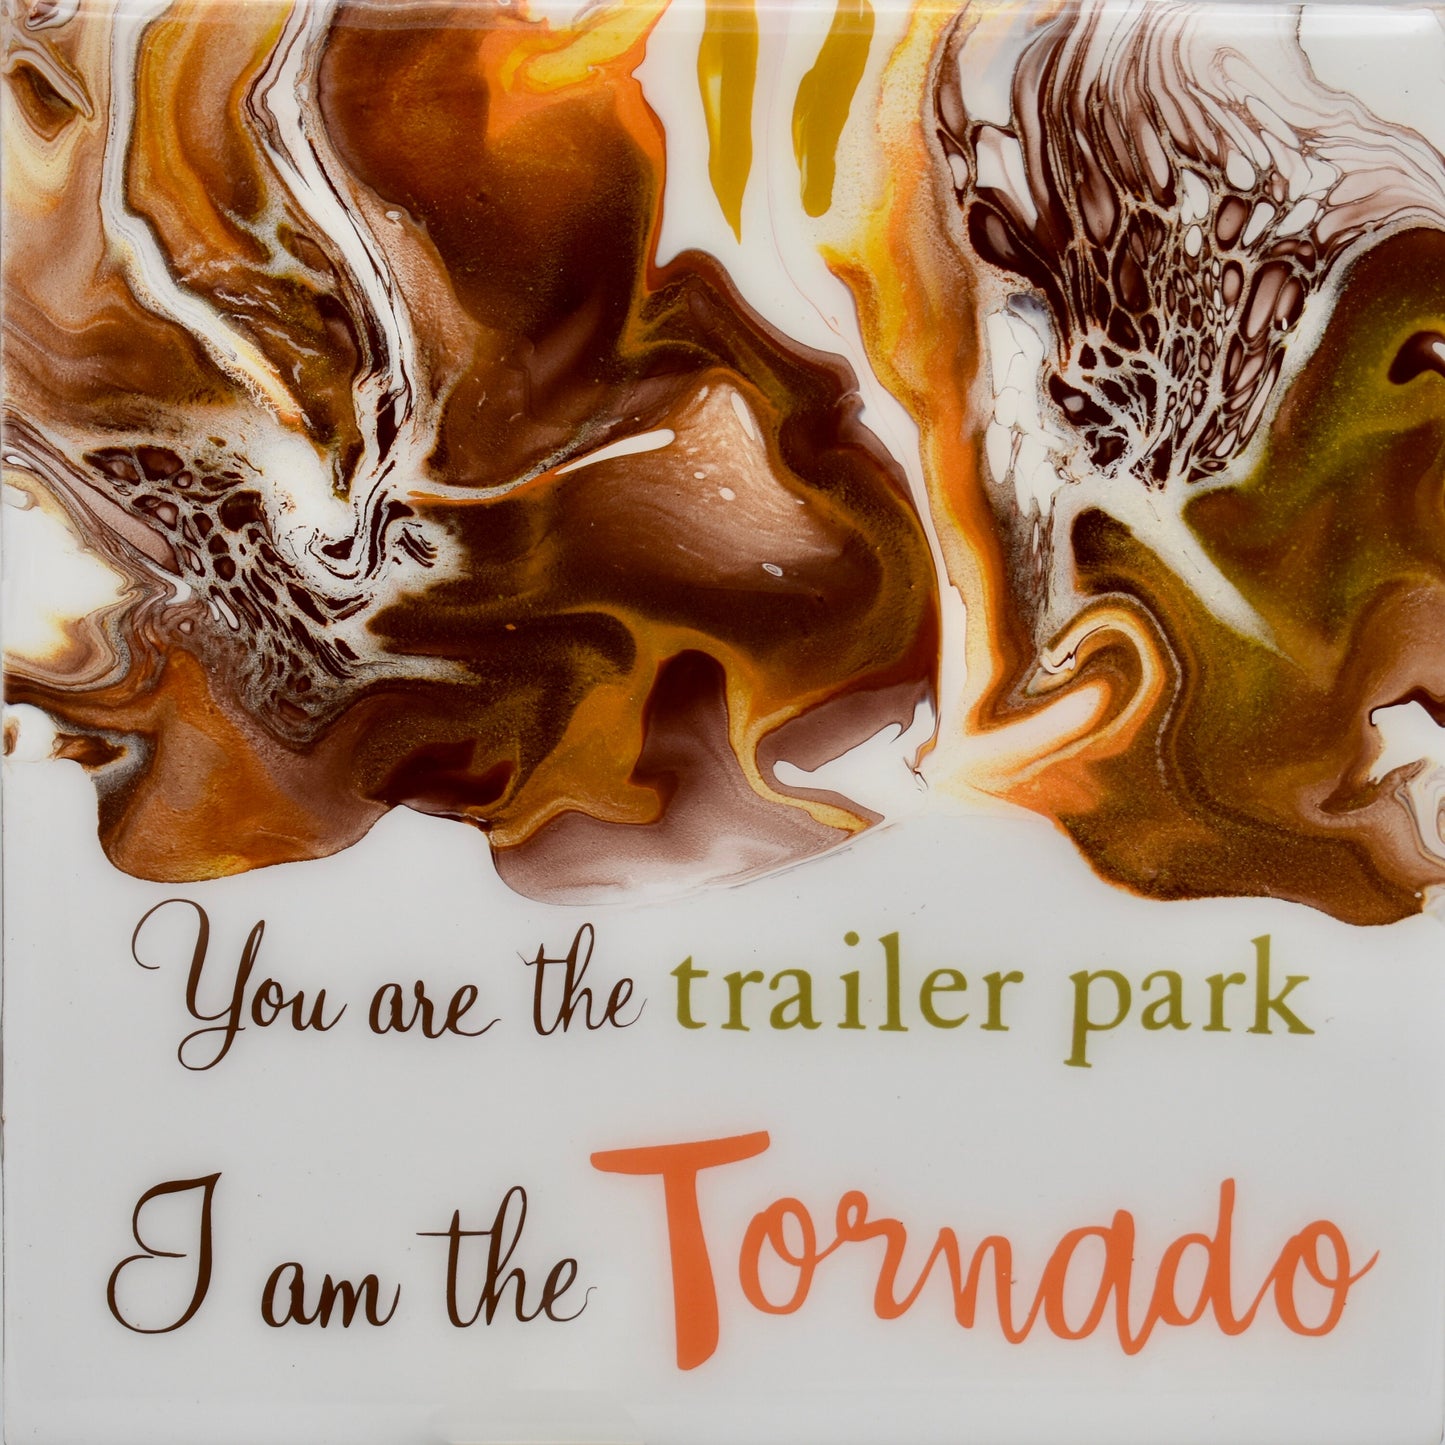 "I am the Tornado" Beth Dutton Coaster Set